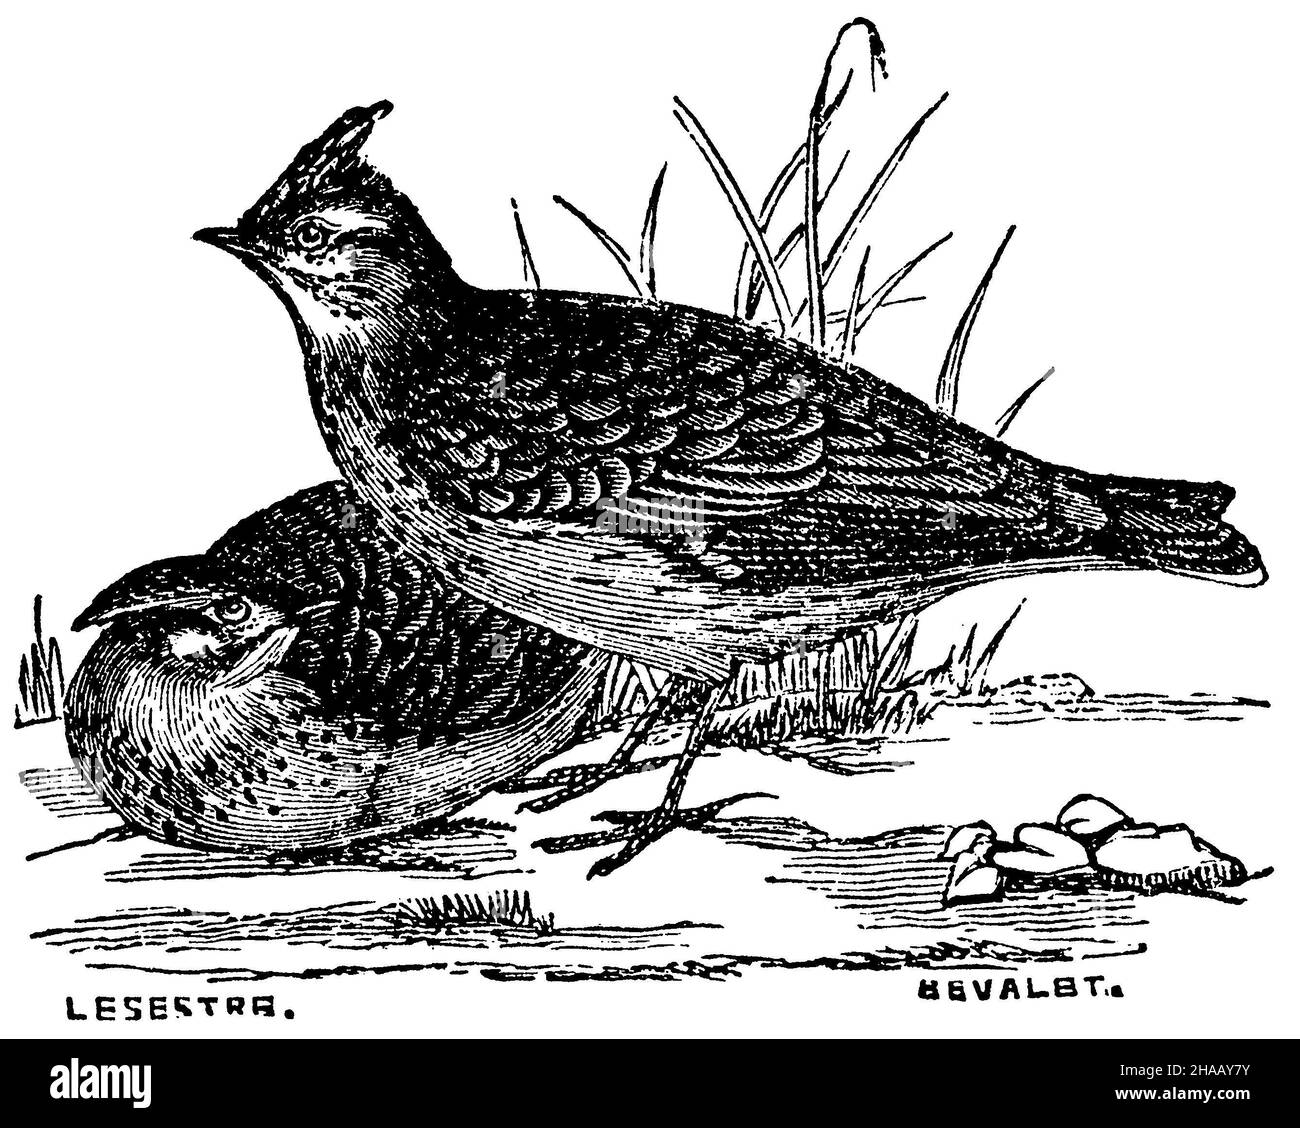 Larice crestato, Galerida cristata, Lesestre u. Bevalbt? (Libro di zoologia, 1877), Haubenlerche Foto Stock